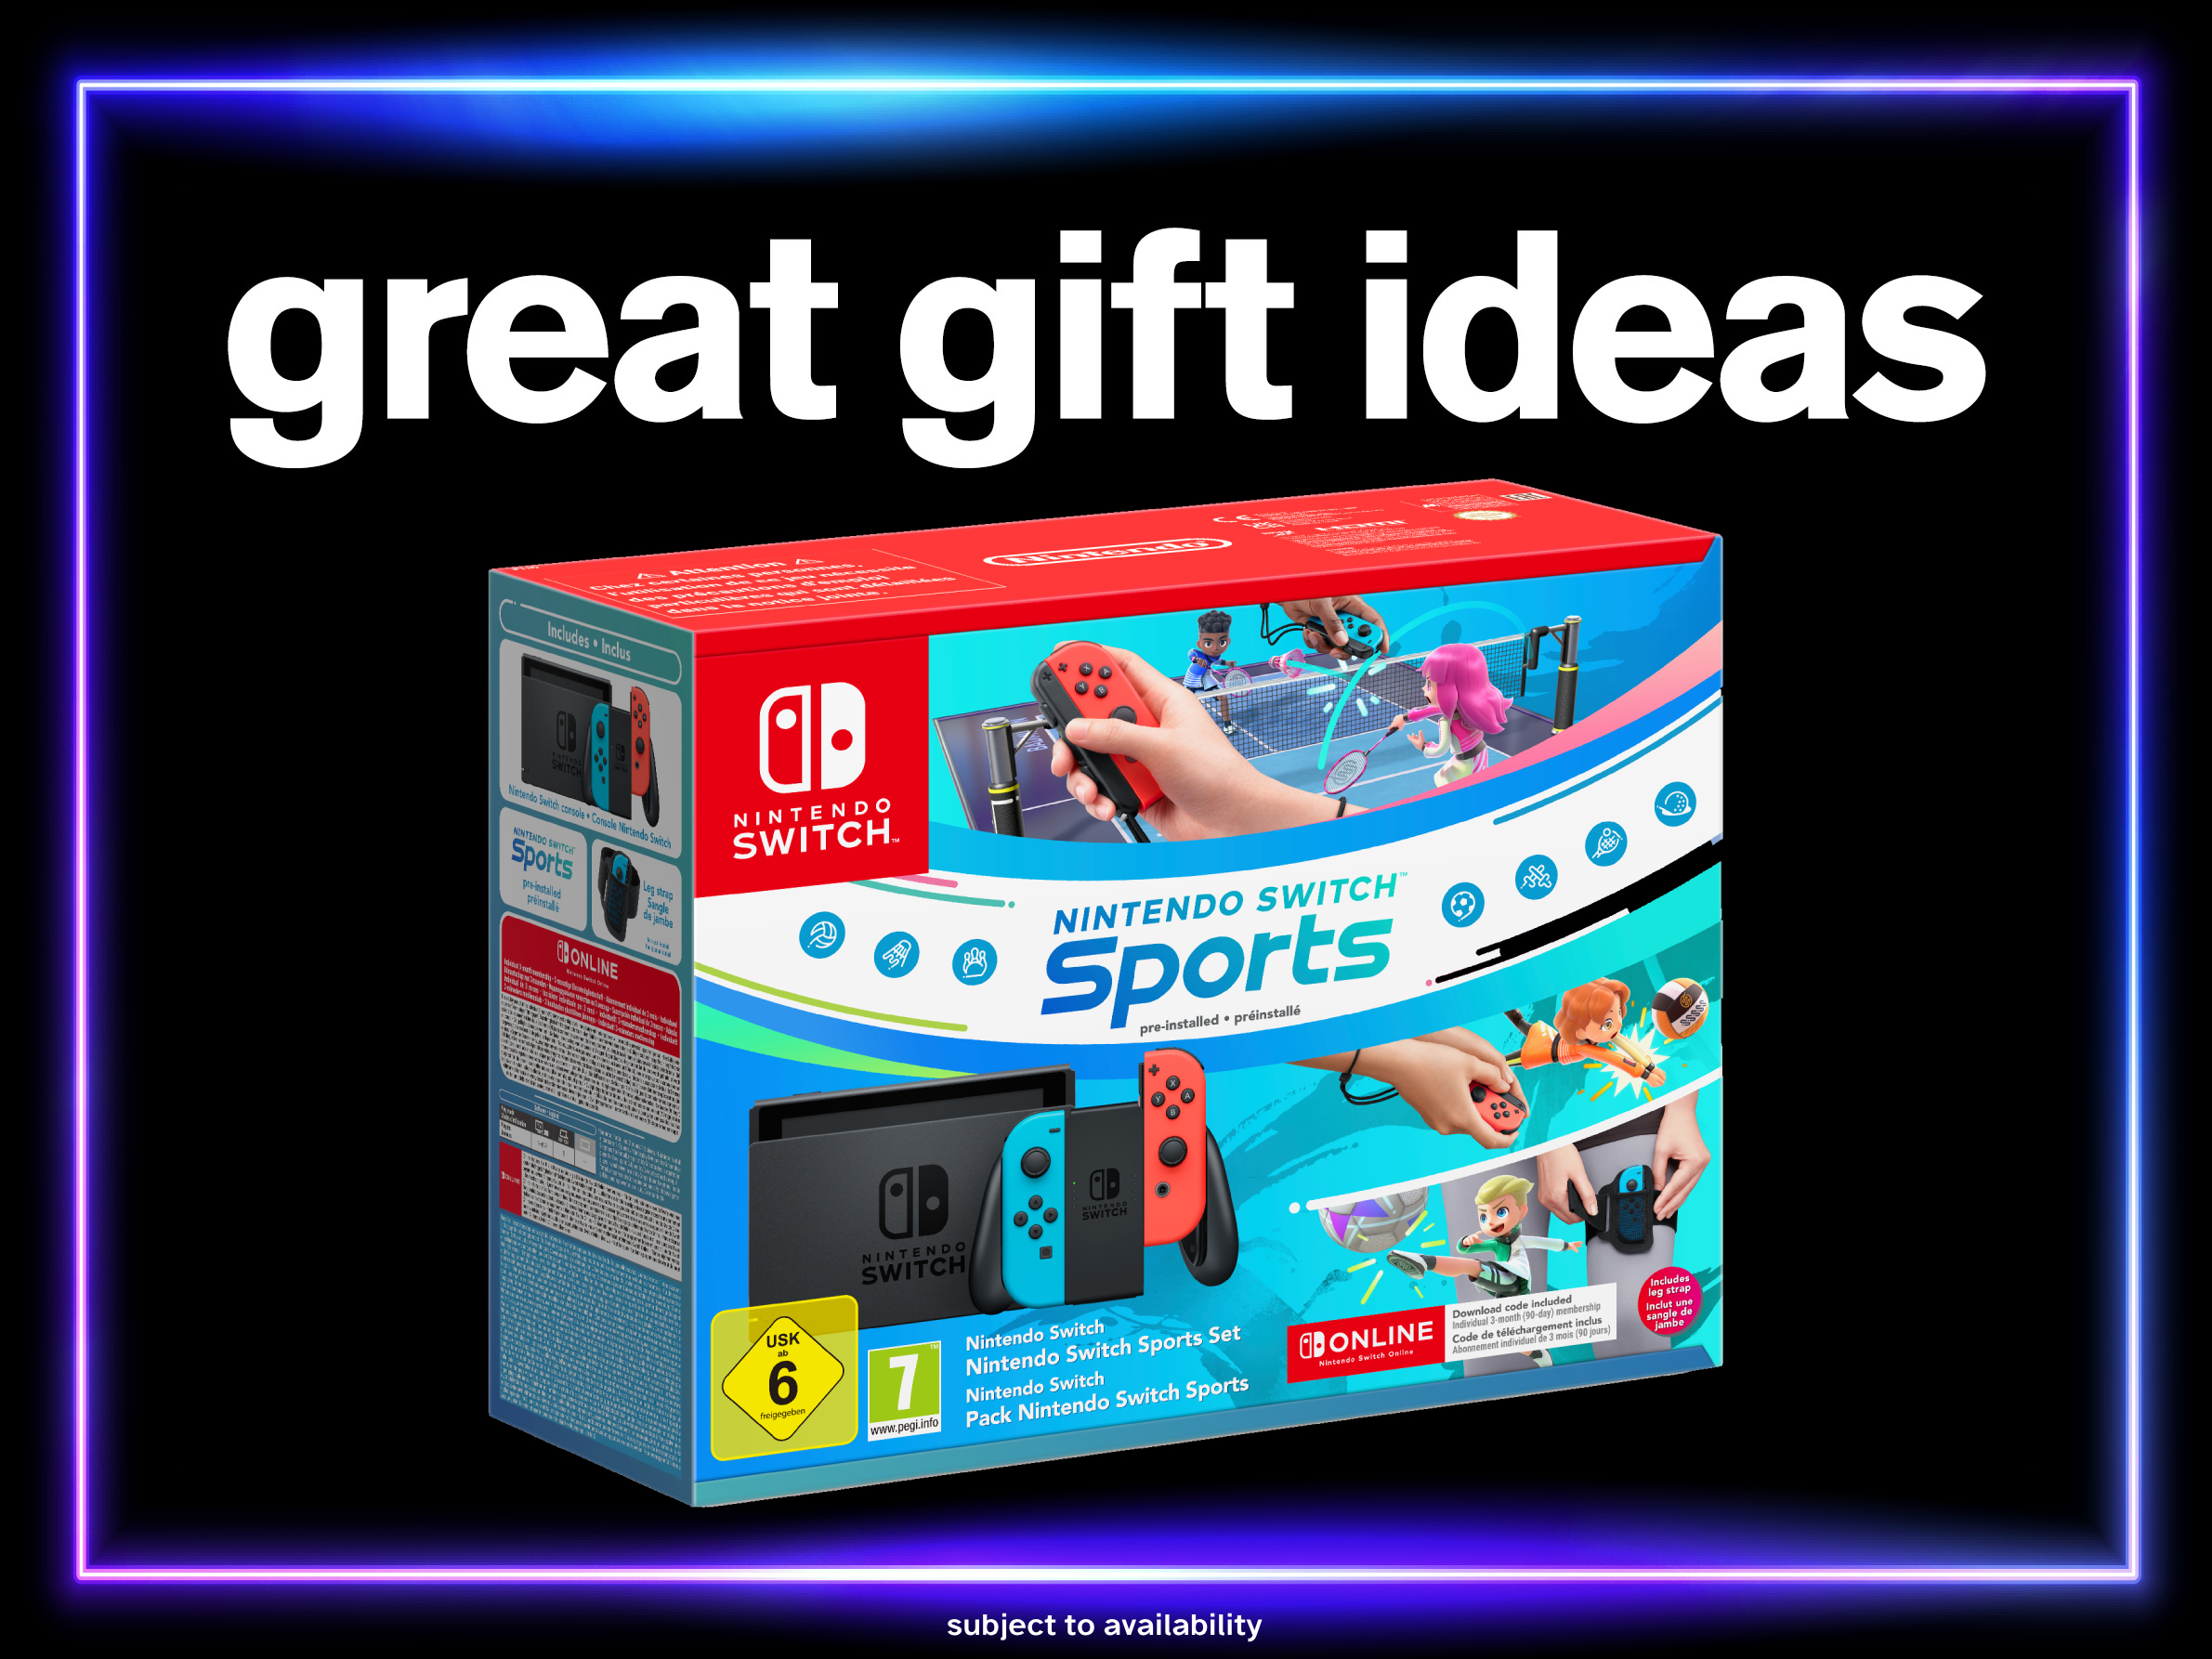 Great Gift Ideas on Nintendo